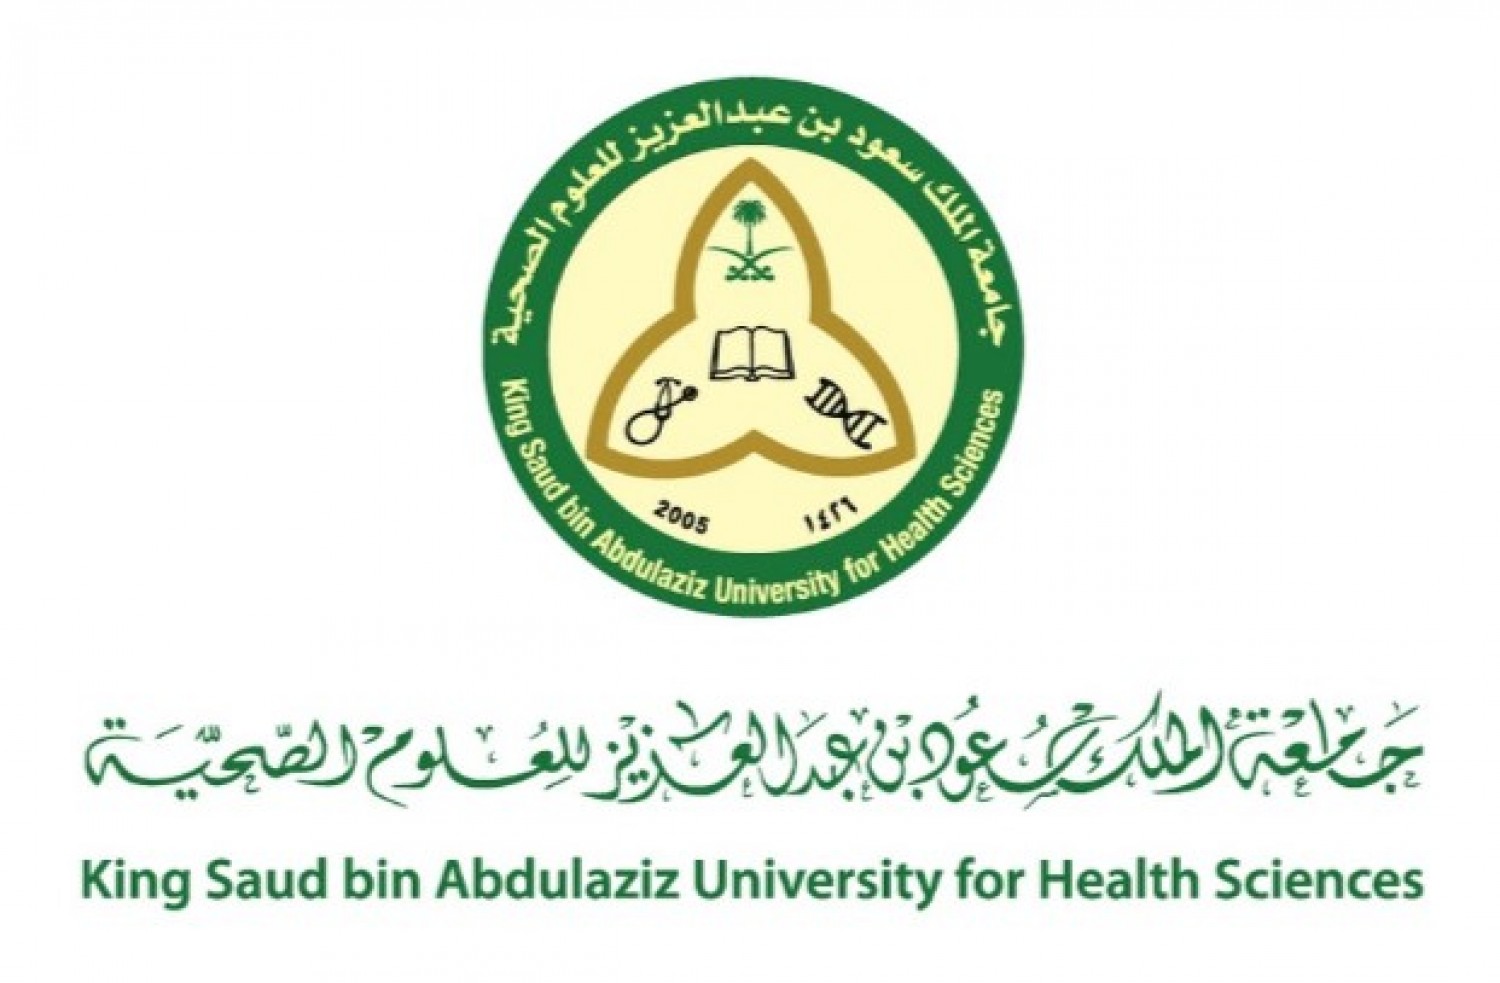 فرص وظيفية شاغرة بجامعة الملك سعود بن عبدالعزيز للعلوم الصحية